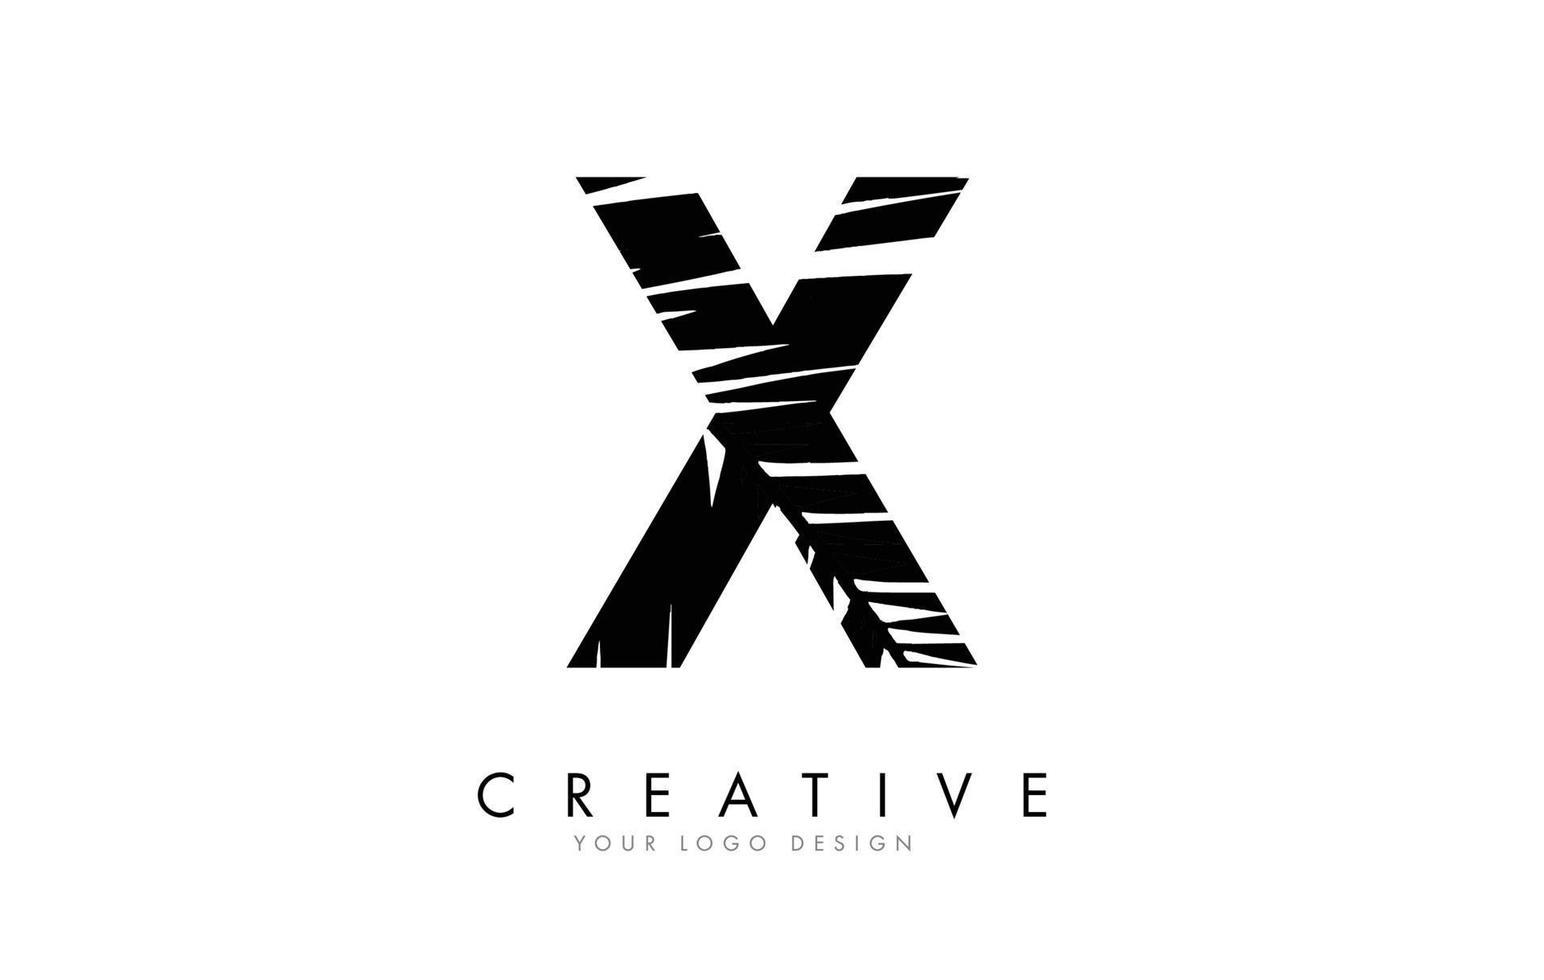 Black Leaf X letter logo design with palm tree leaf detail vector illustration.